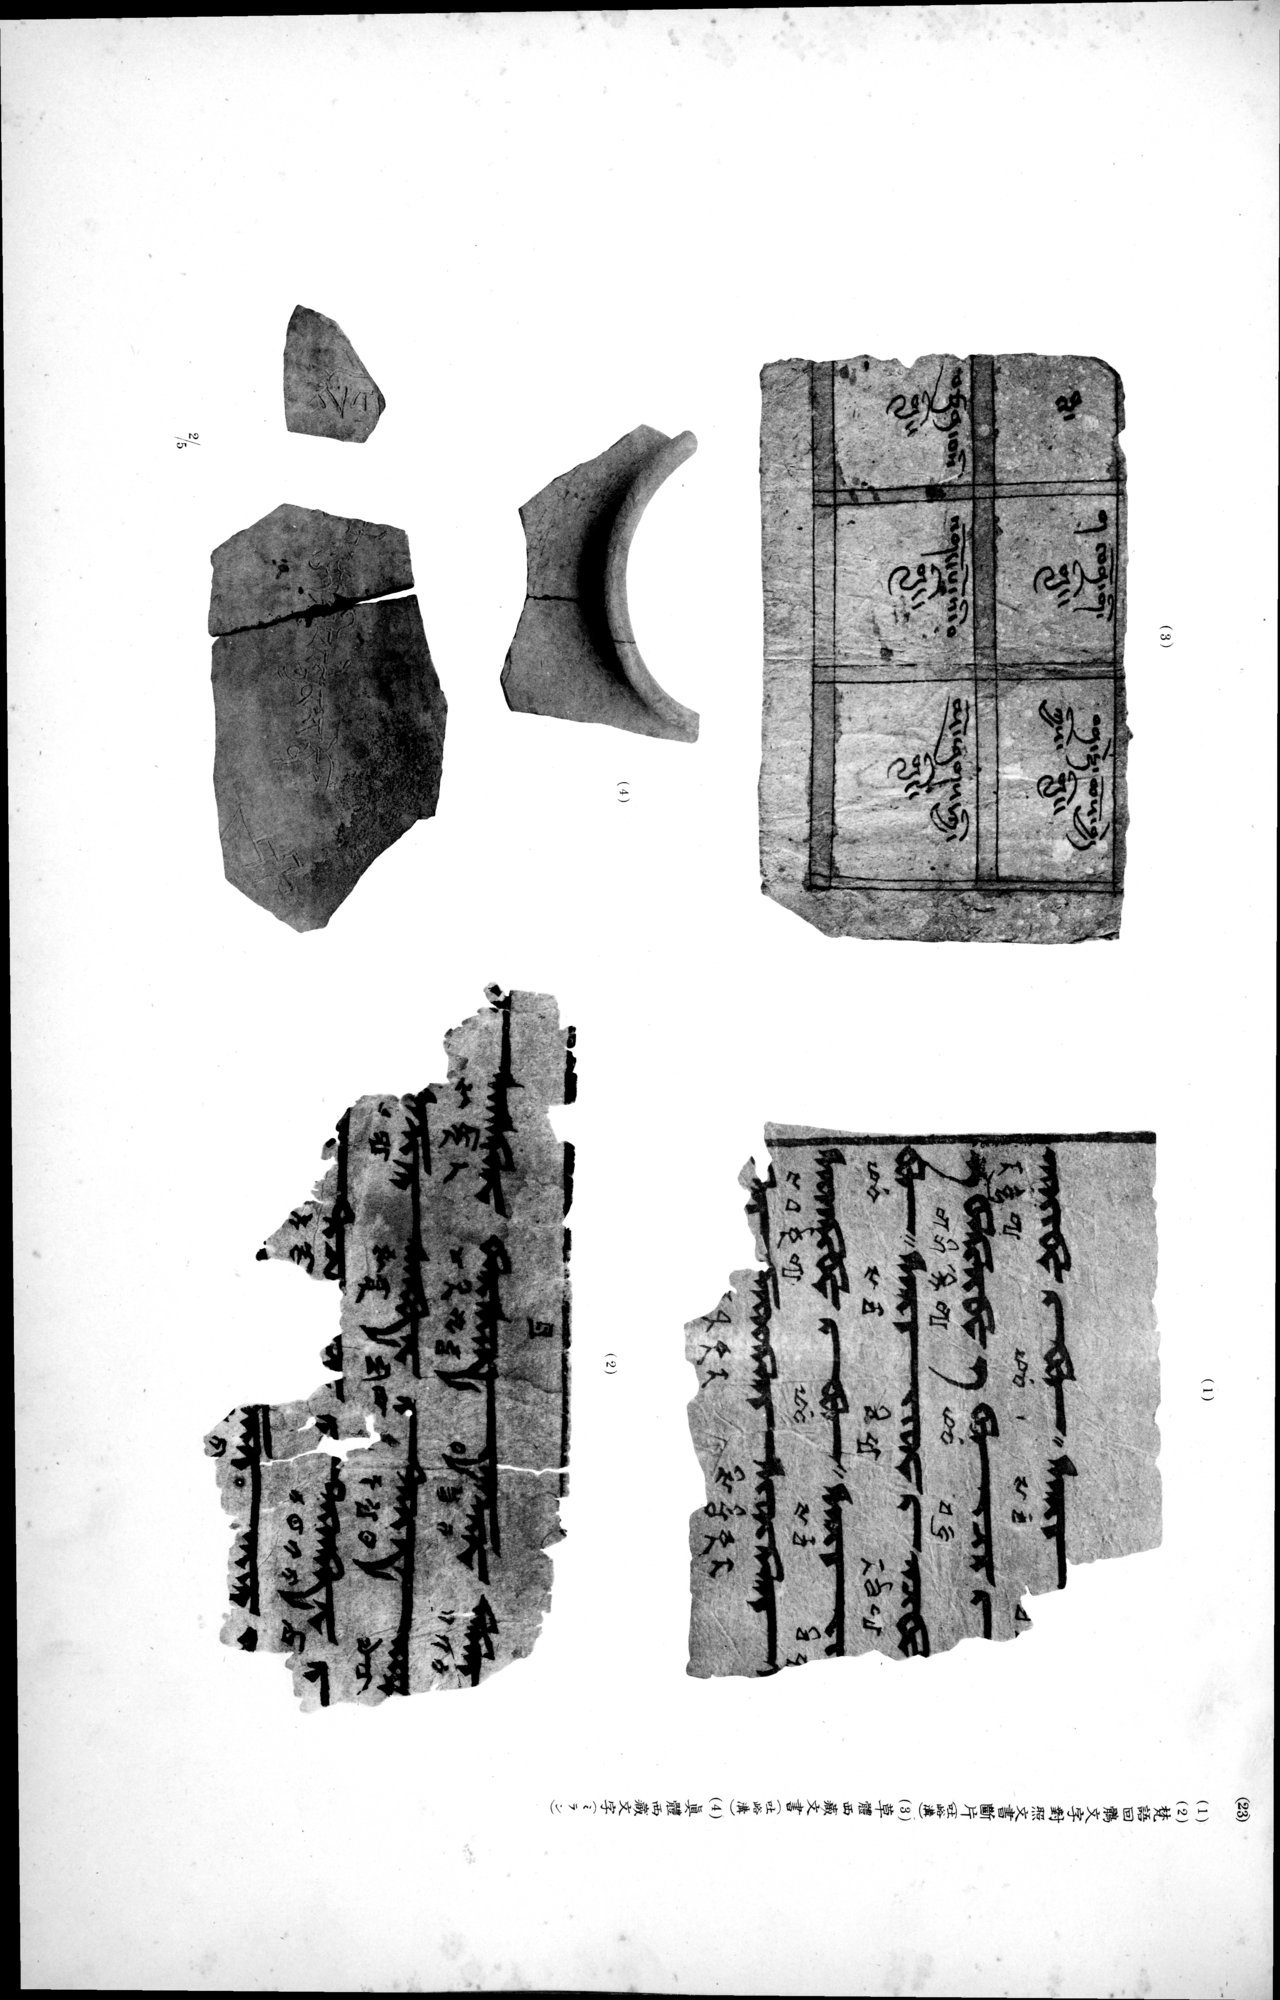 西域考古図譜 : vol.2 / Page 299 (Grayscale High Resolution Image)